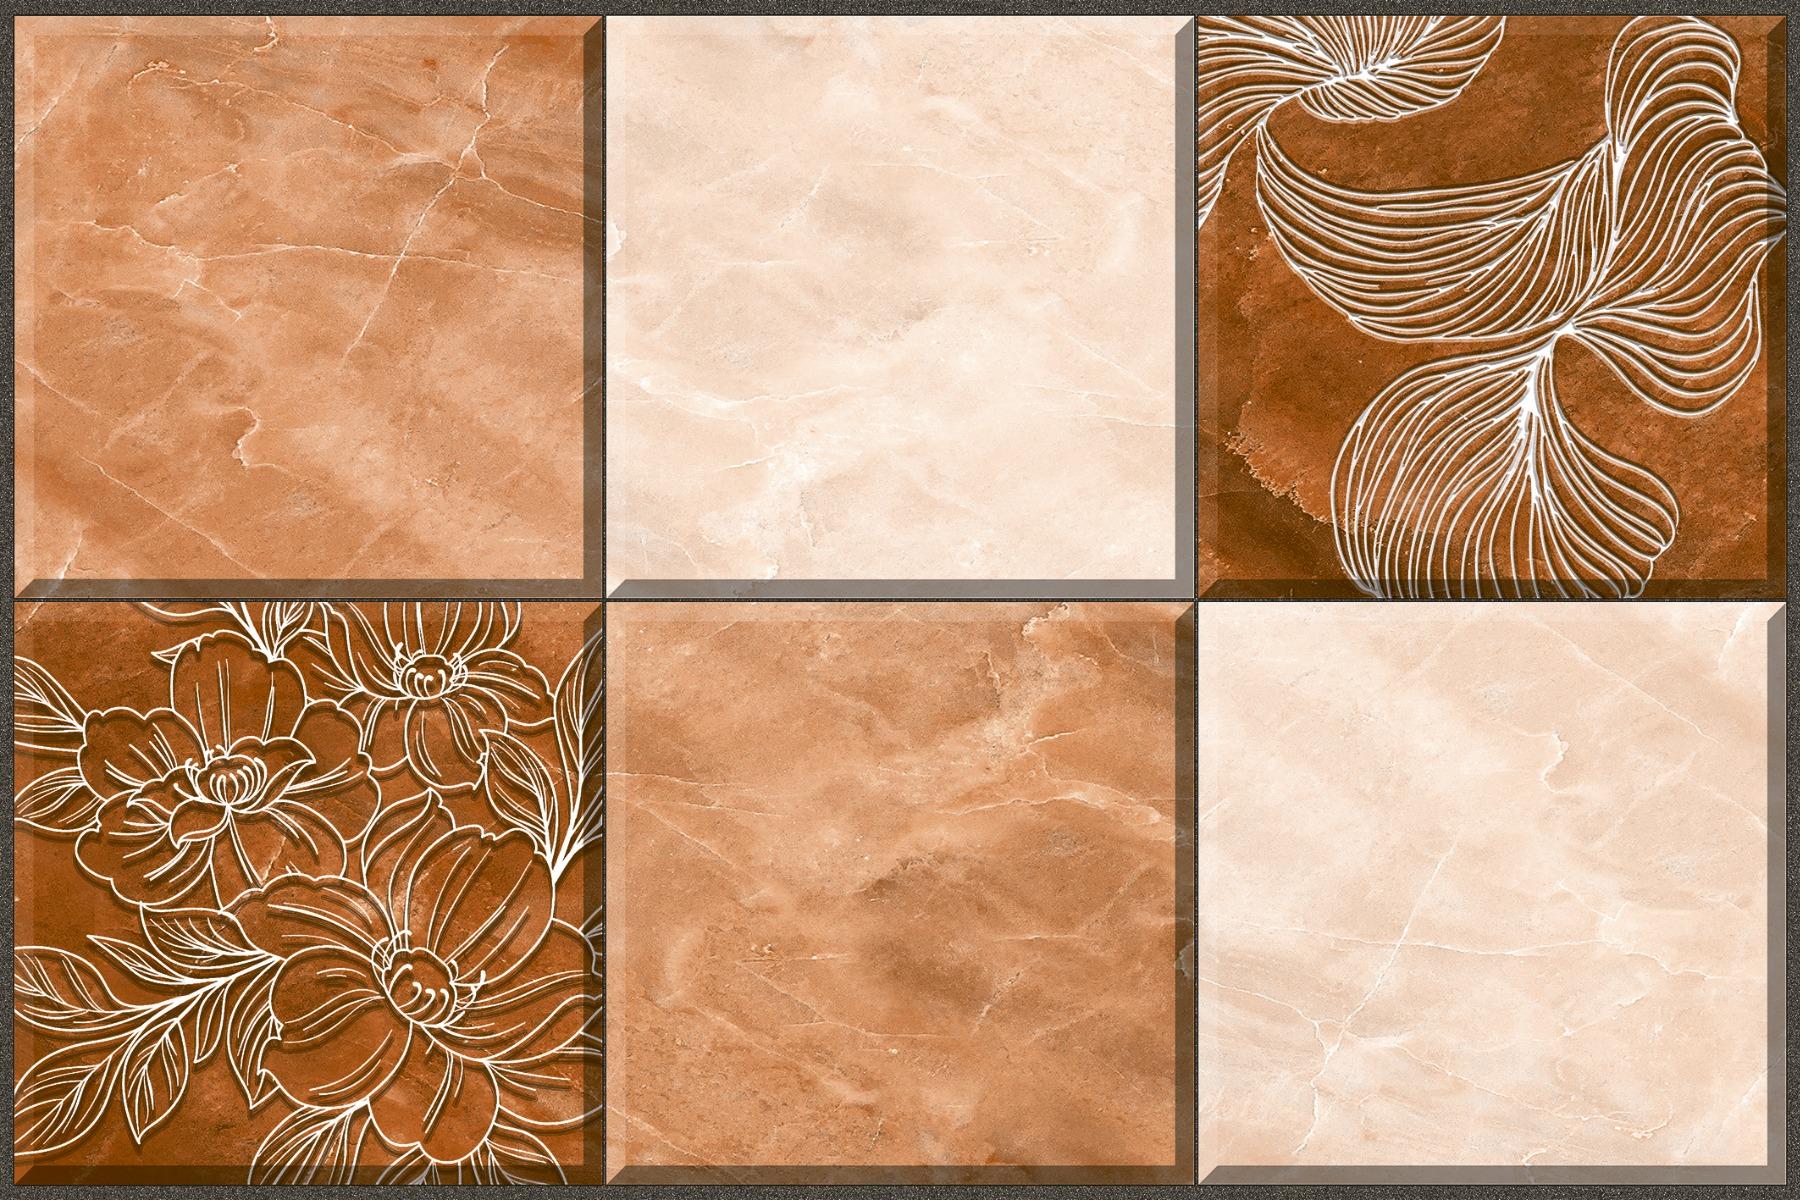 Marble Tiles for Bathroom Tiles, Living Room Tiles, Kitchen Tiles, Bedroom Tiles, Balcony Tiles